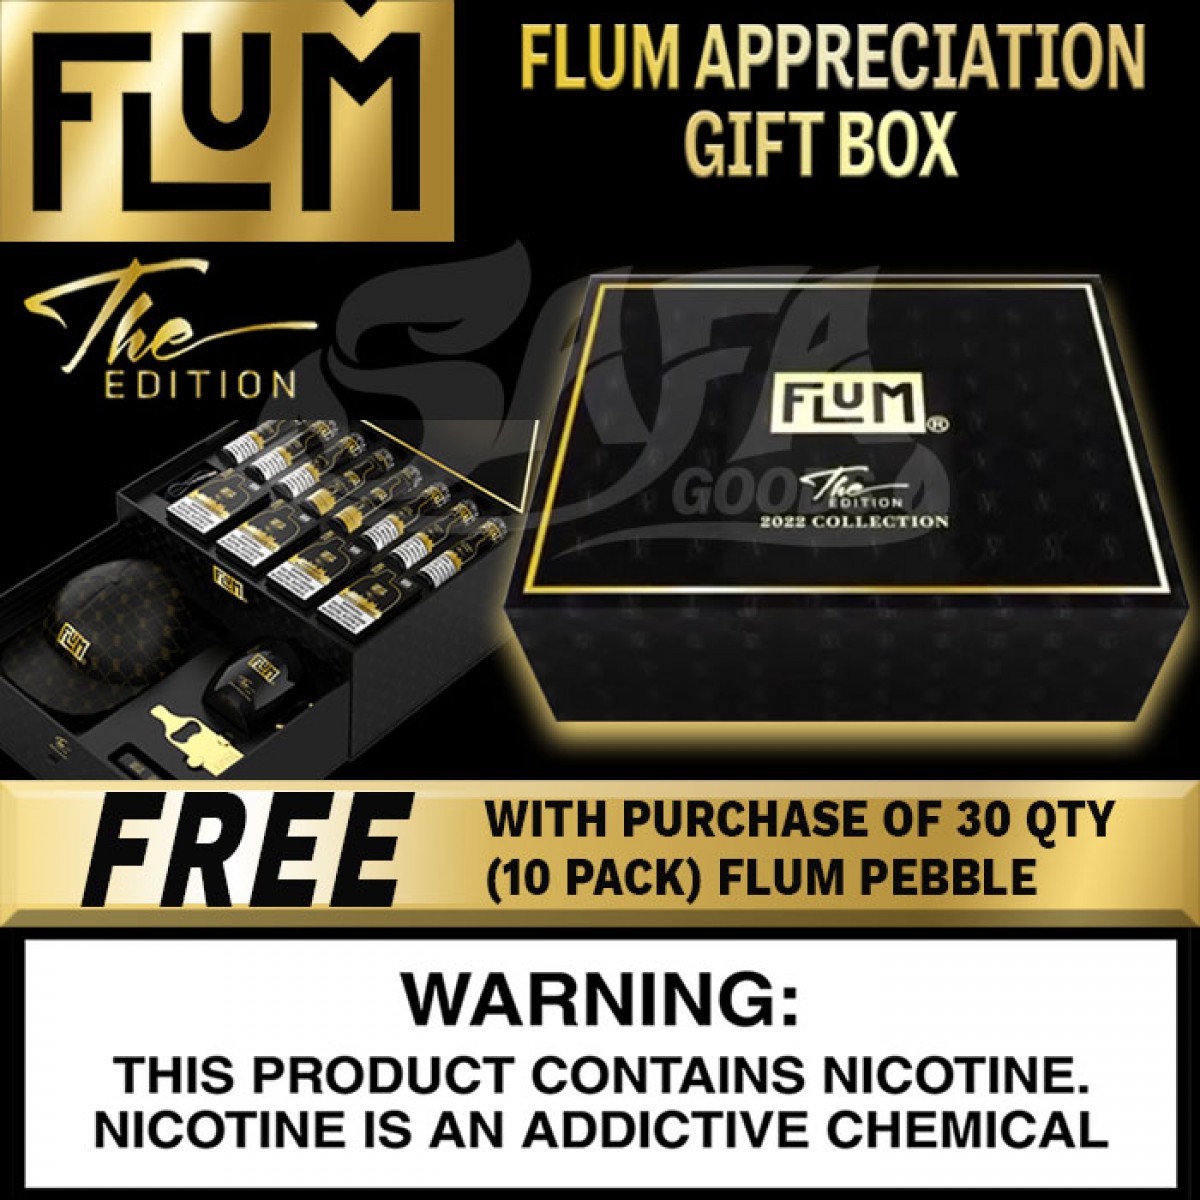 FLUM Appreciation Gift Box - The Edition